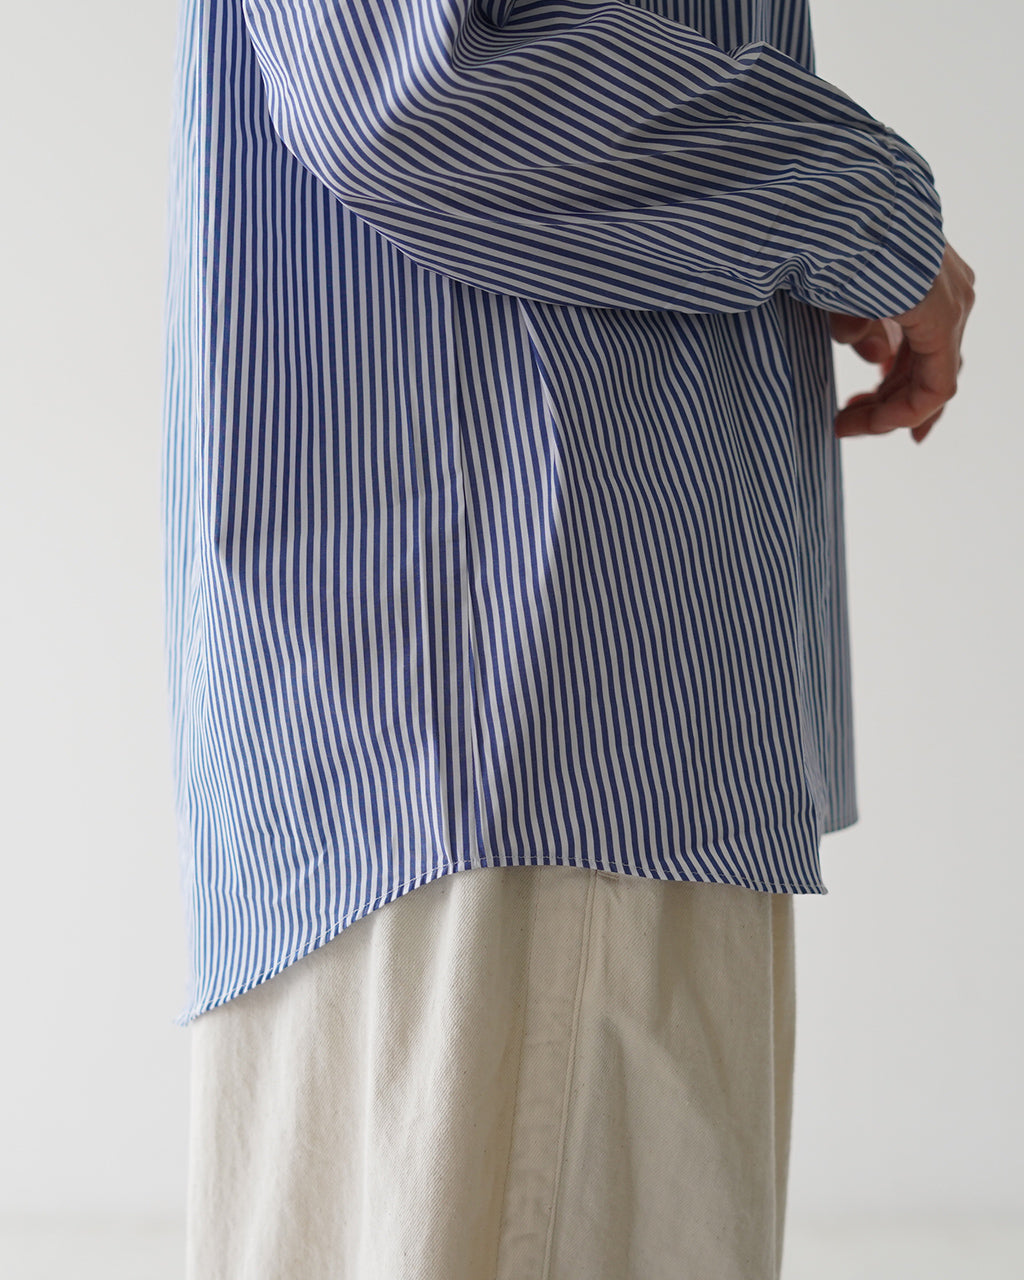 Commencement コメンスメント ストライプシャツ Stripe shirt  バンドカラー レディース C-211【送料無料】